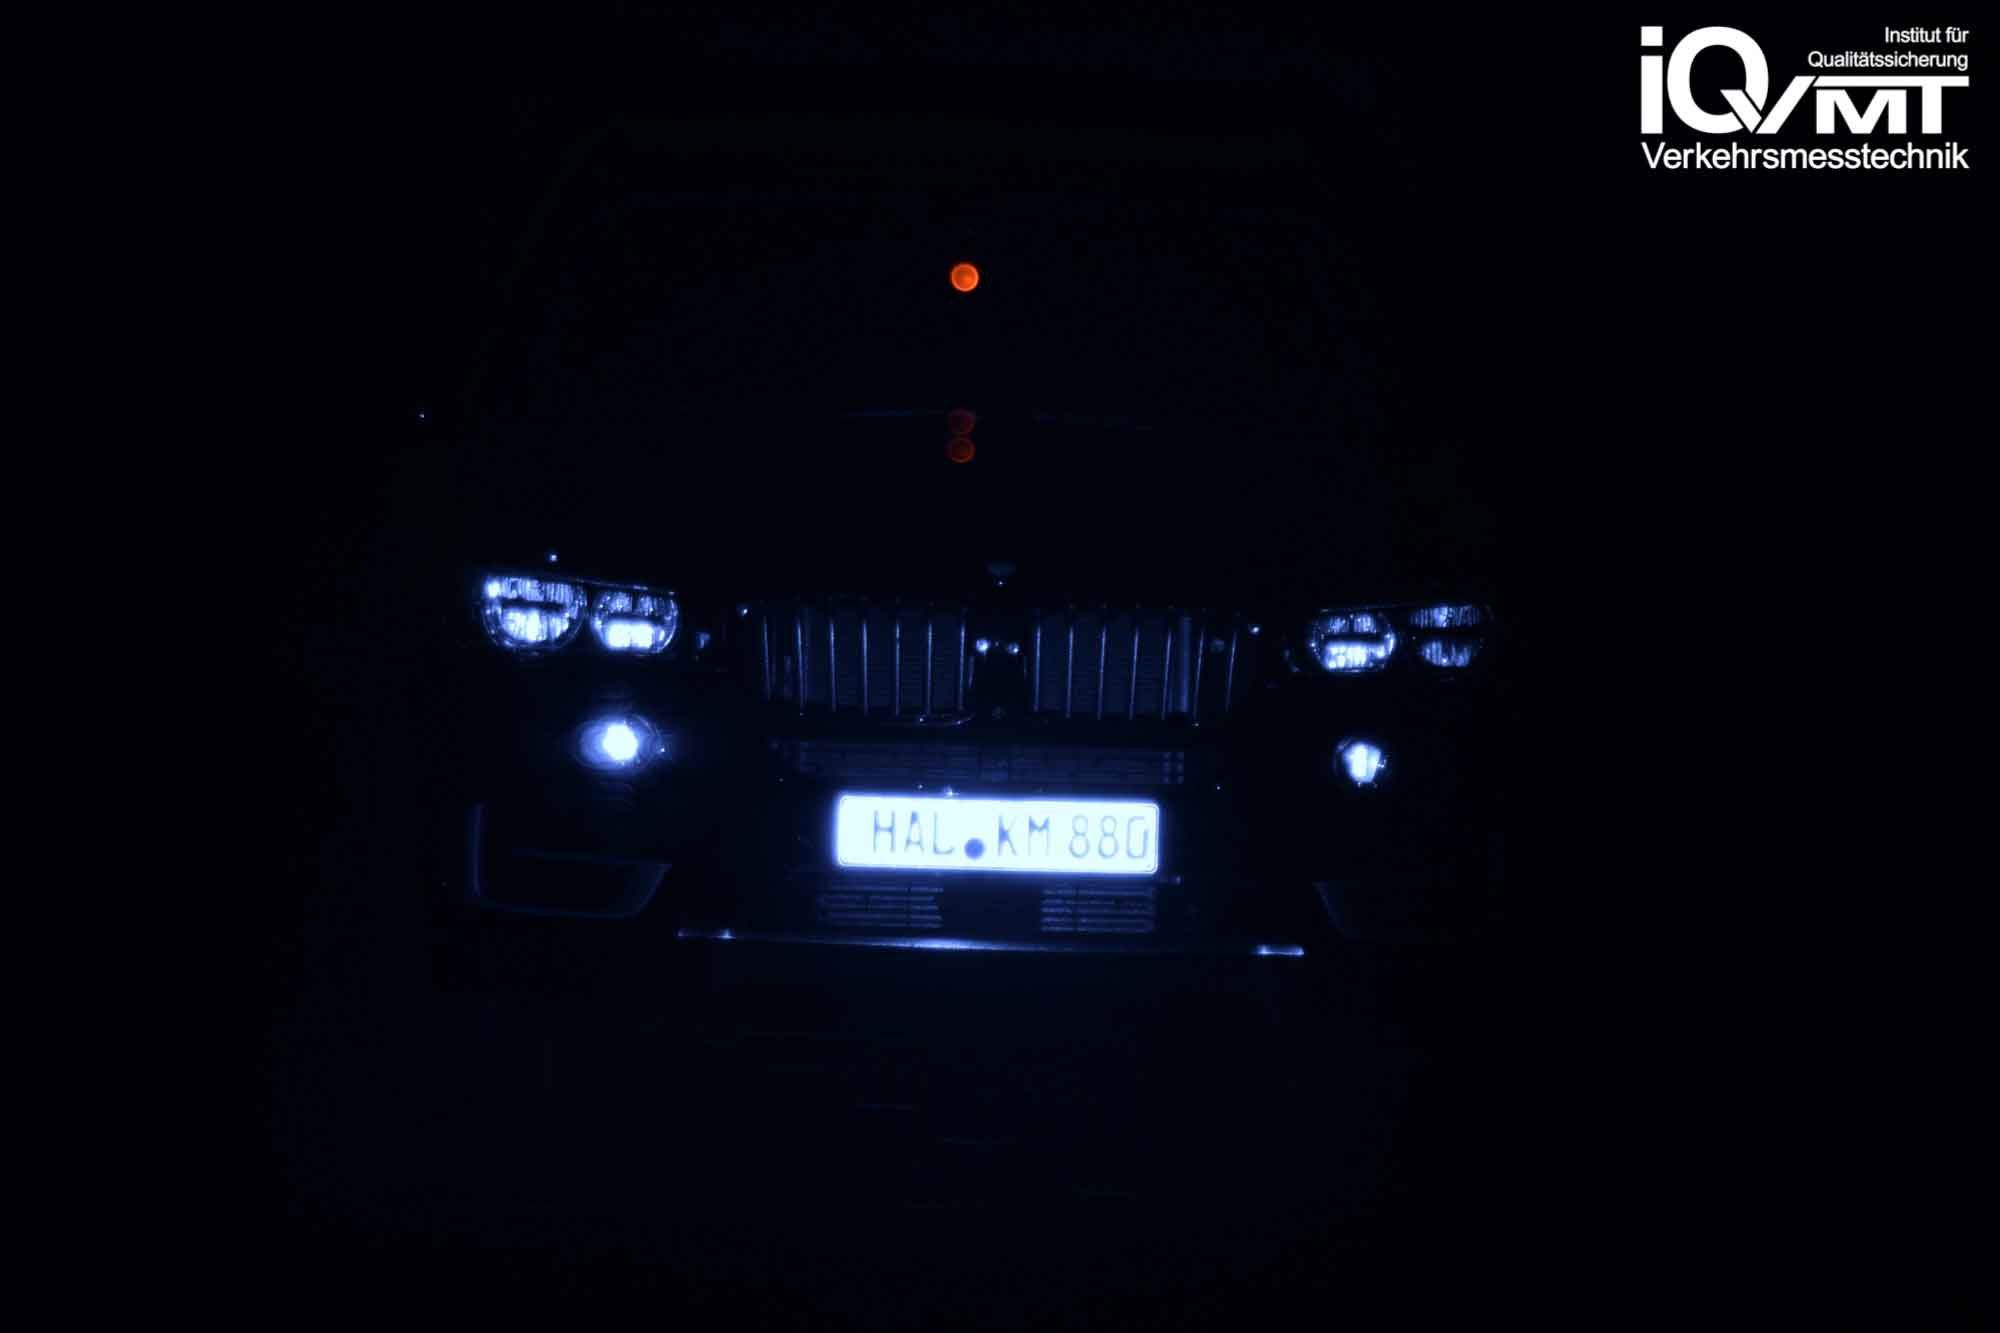 iQvmt - Infrarotfoto zur Refektivität der messrelevanten IR-Laserstrahlung am BMW X5